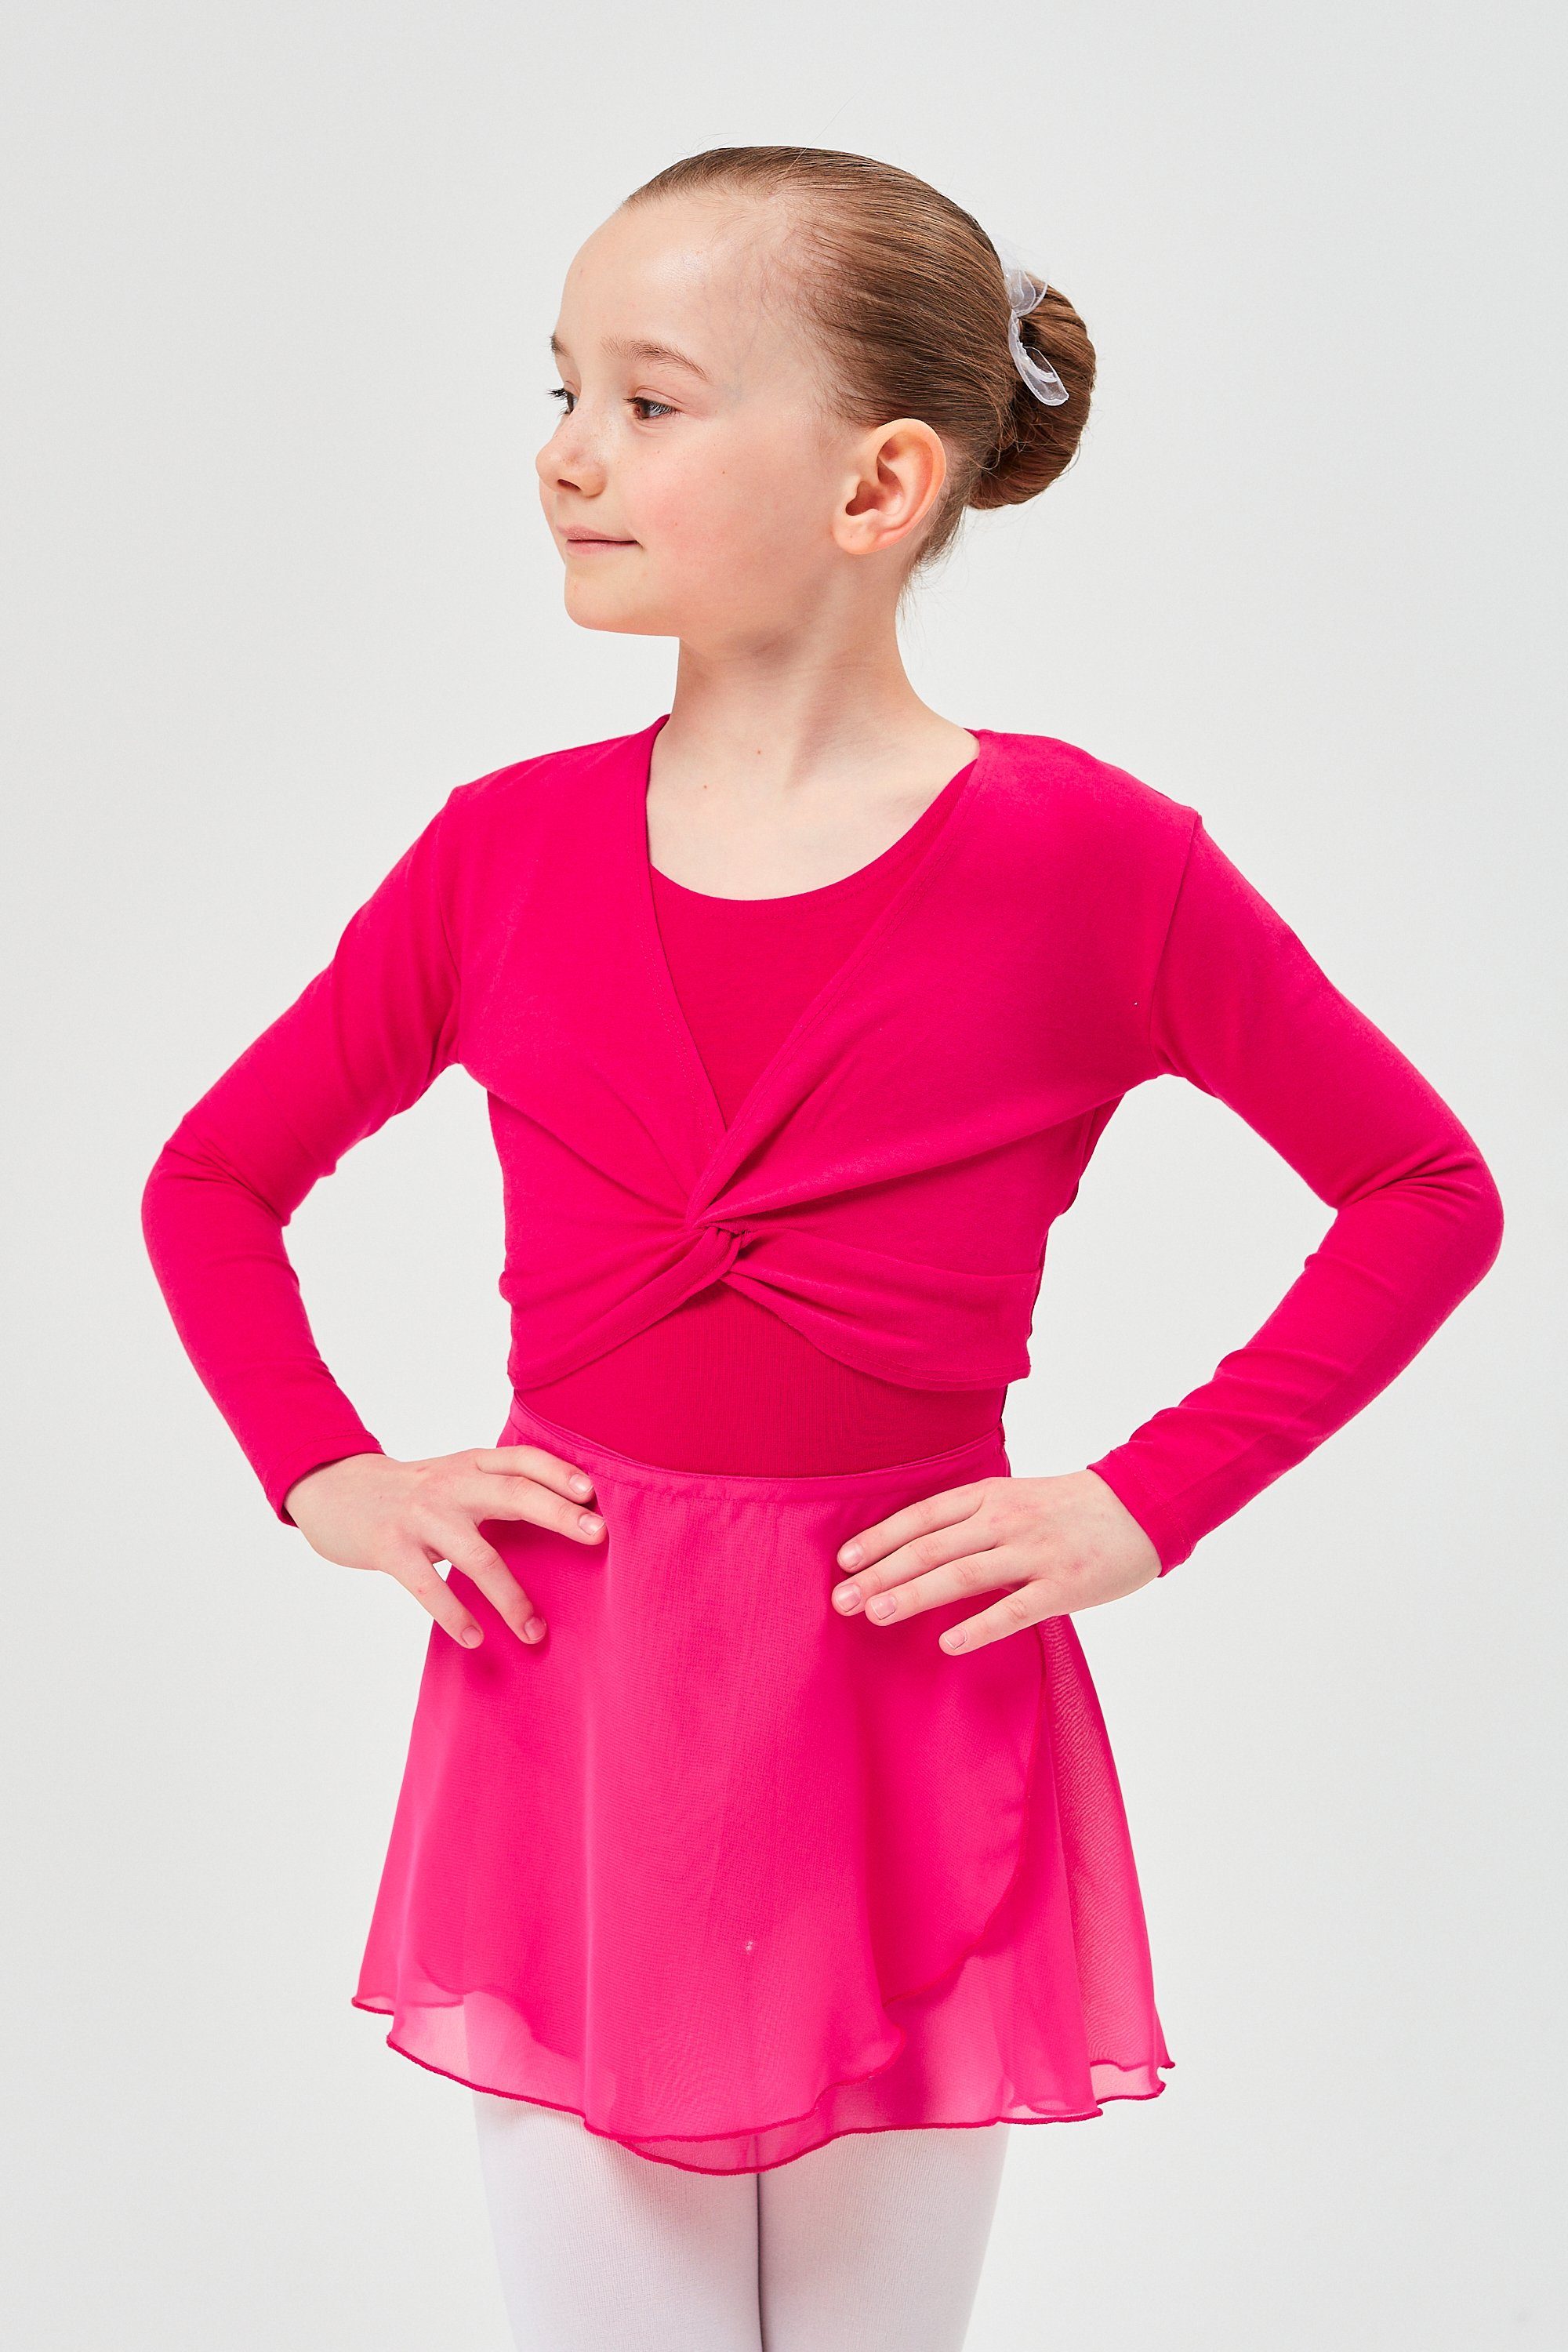 tanzmuster Crop-Top Langarm Ballett Top Mia aus wunderbar weicher Baumwolle Oberteil für Mädchen fürs Kinder Ballett pink